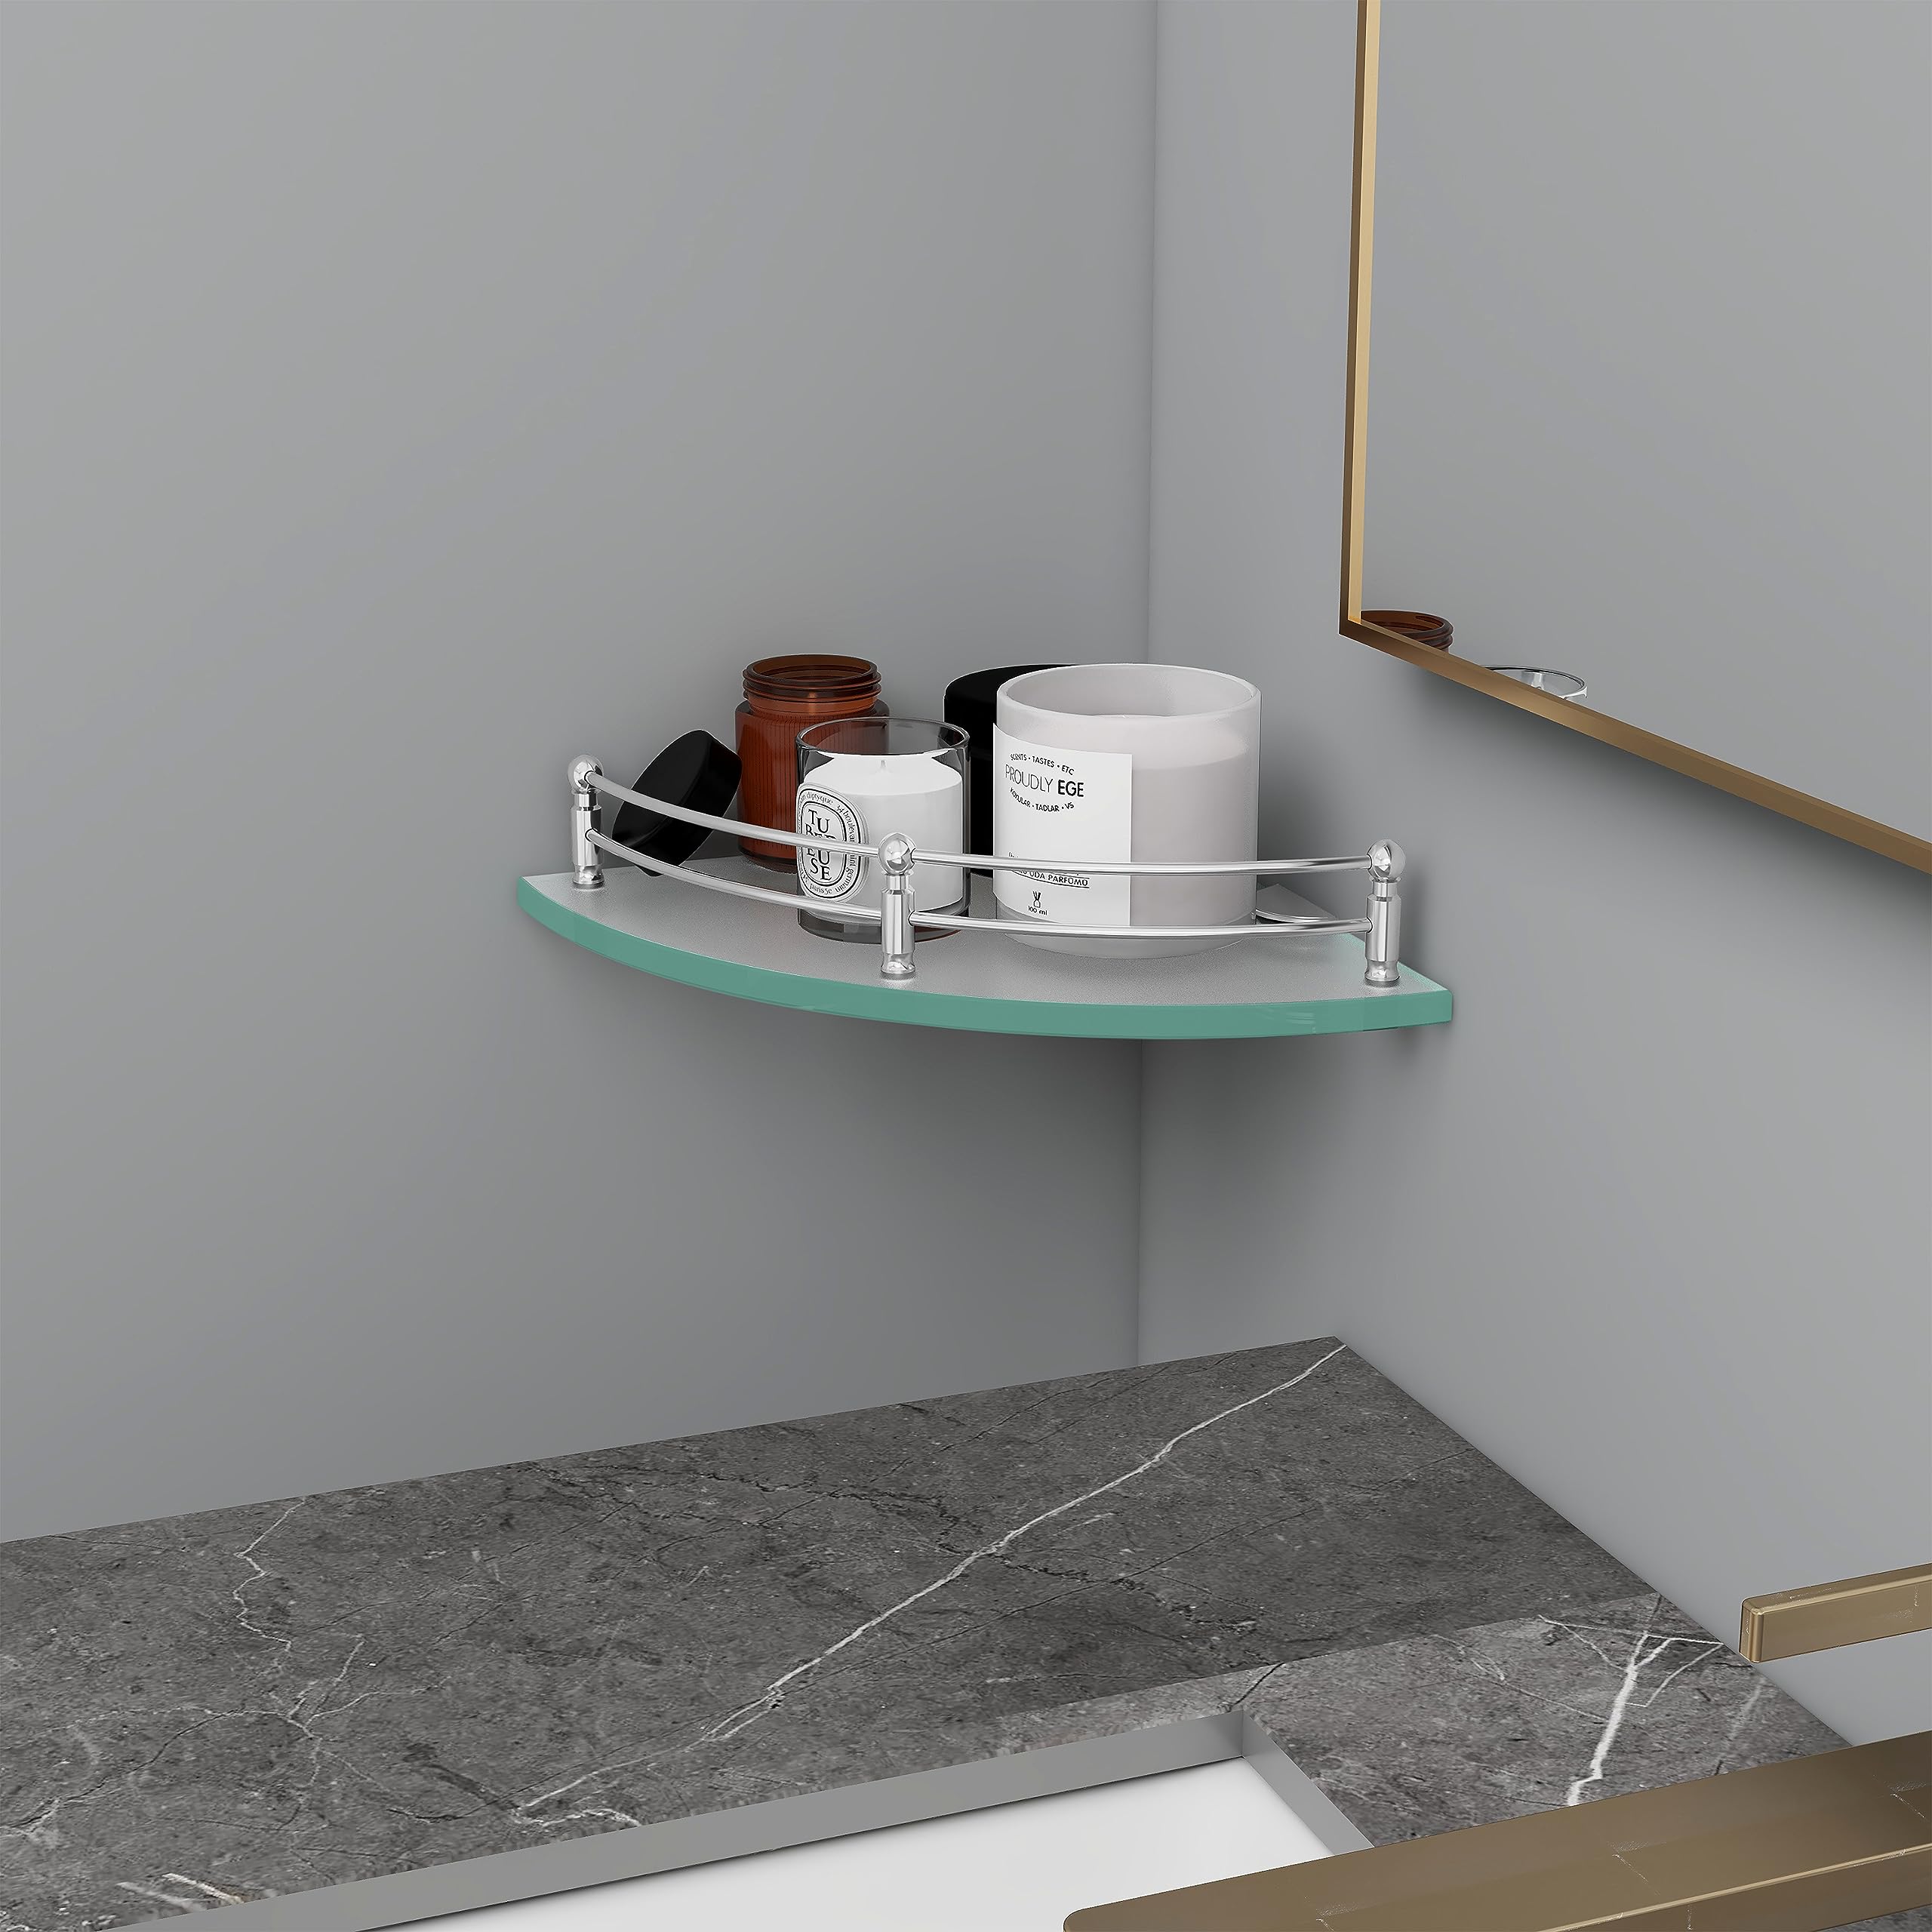 Plantex Premium Transparent Glass Corner Shelf for Bathroom/Wall Shelf/Storage Shelf (12 x 12 Inches - Pack of 1)